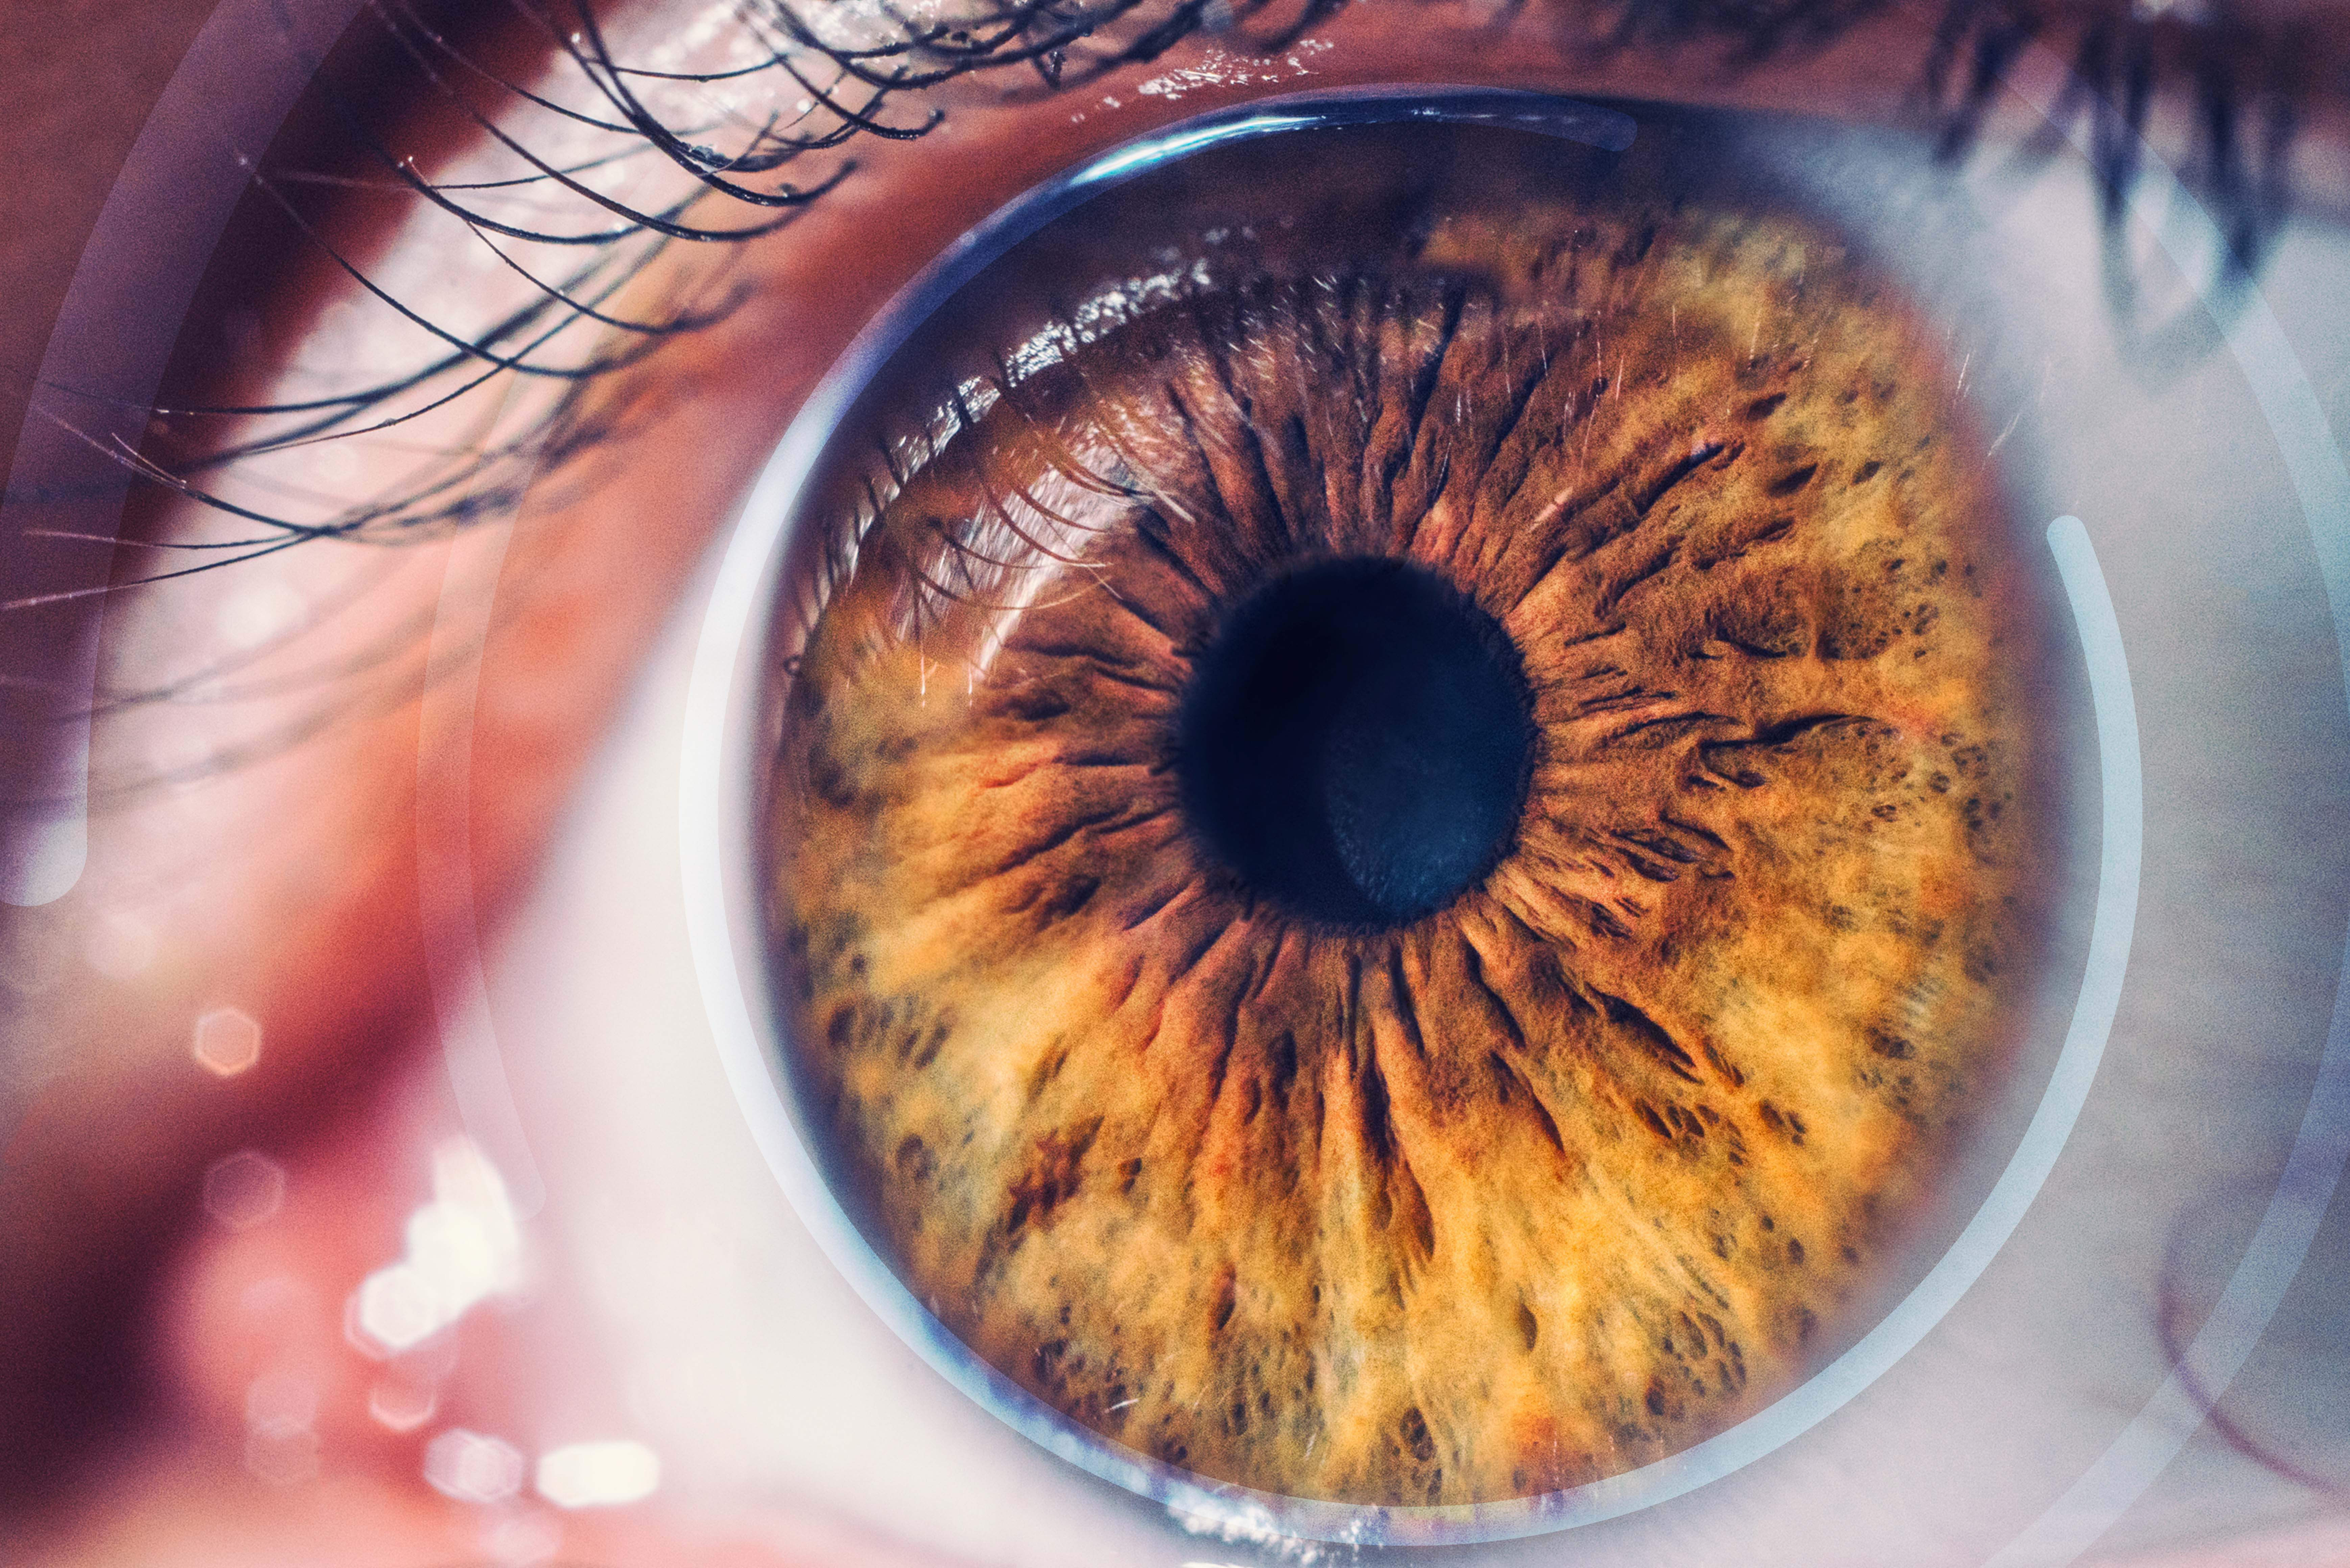 Primer plano del ojo marrón de una persona